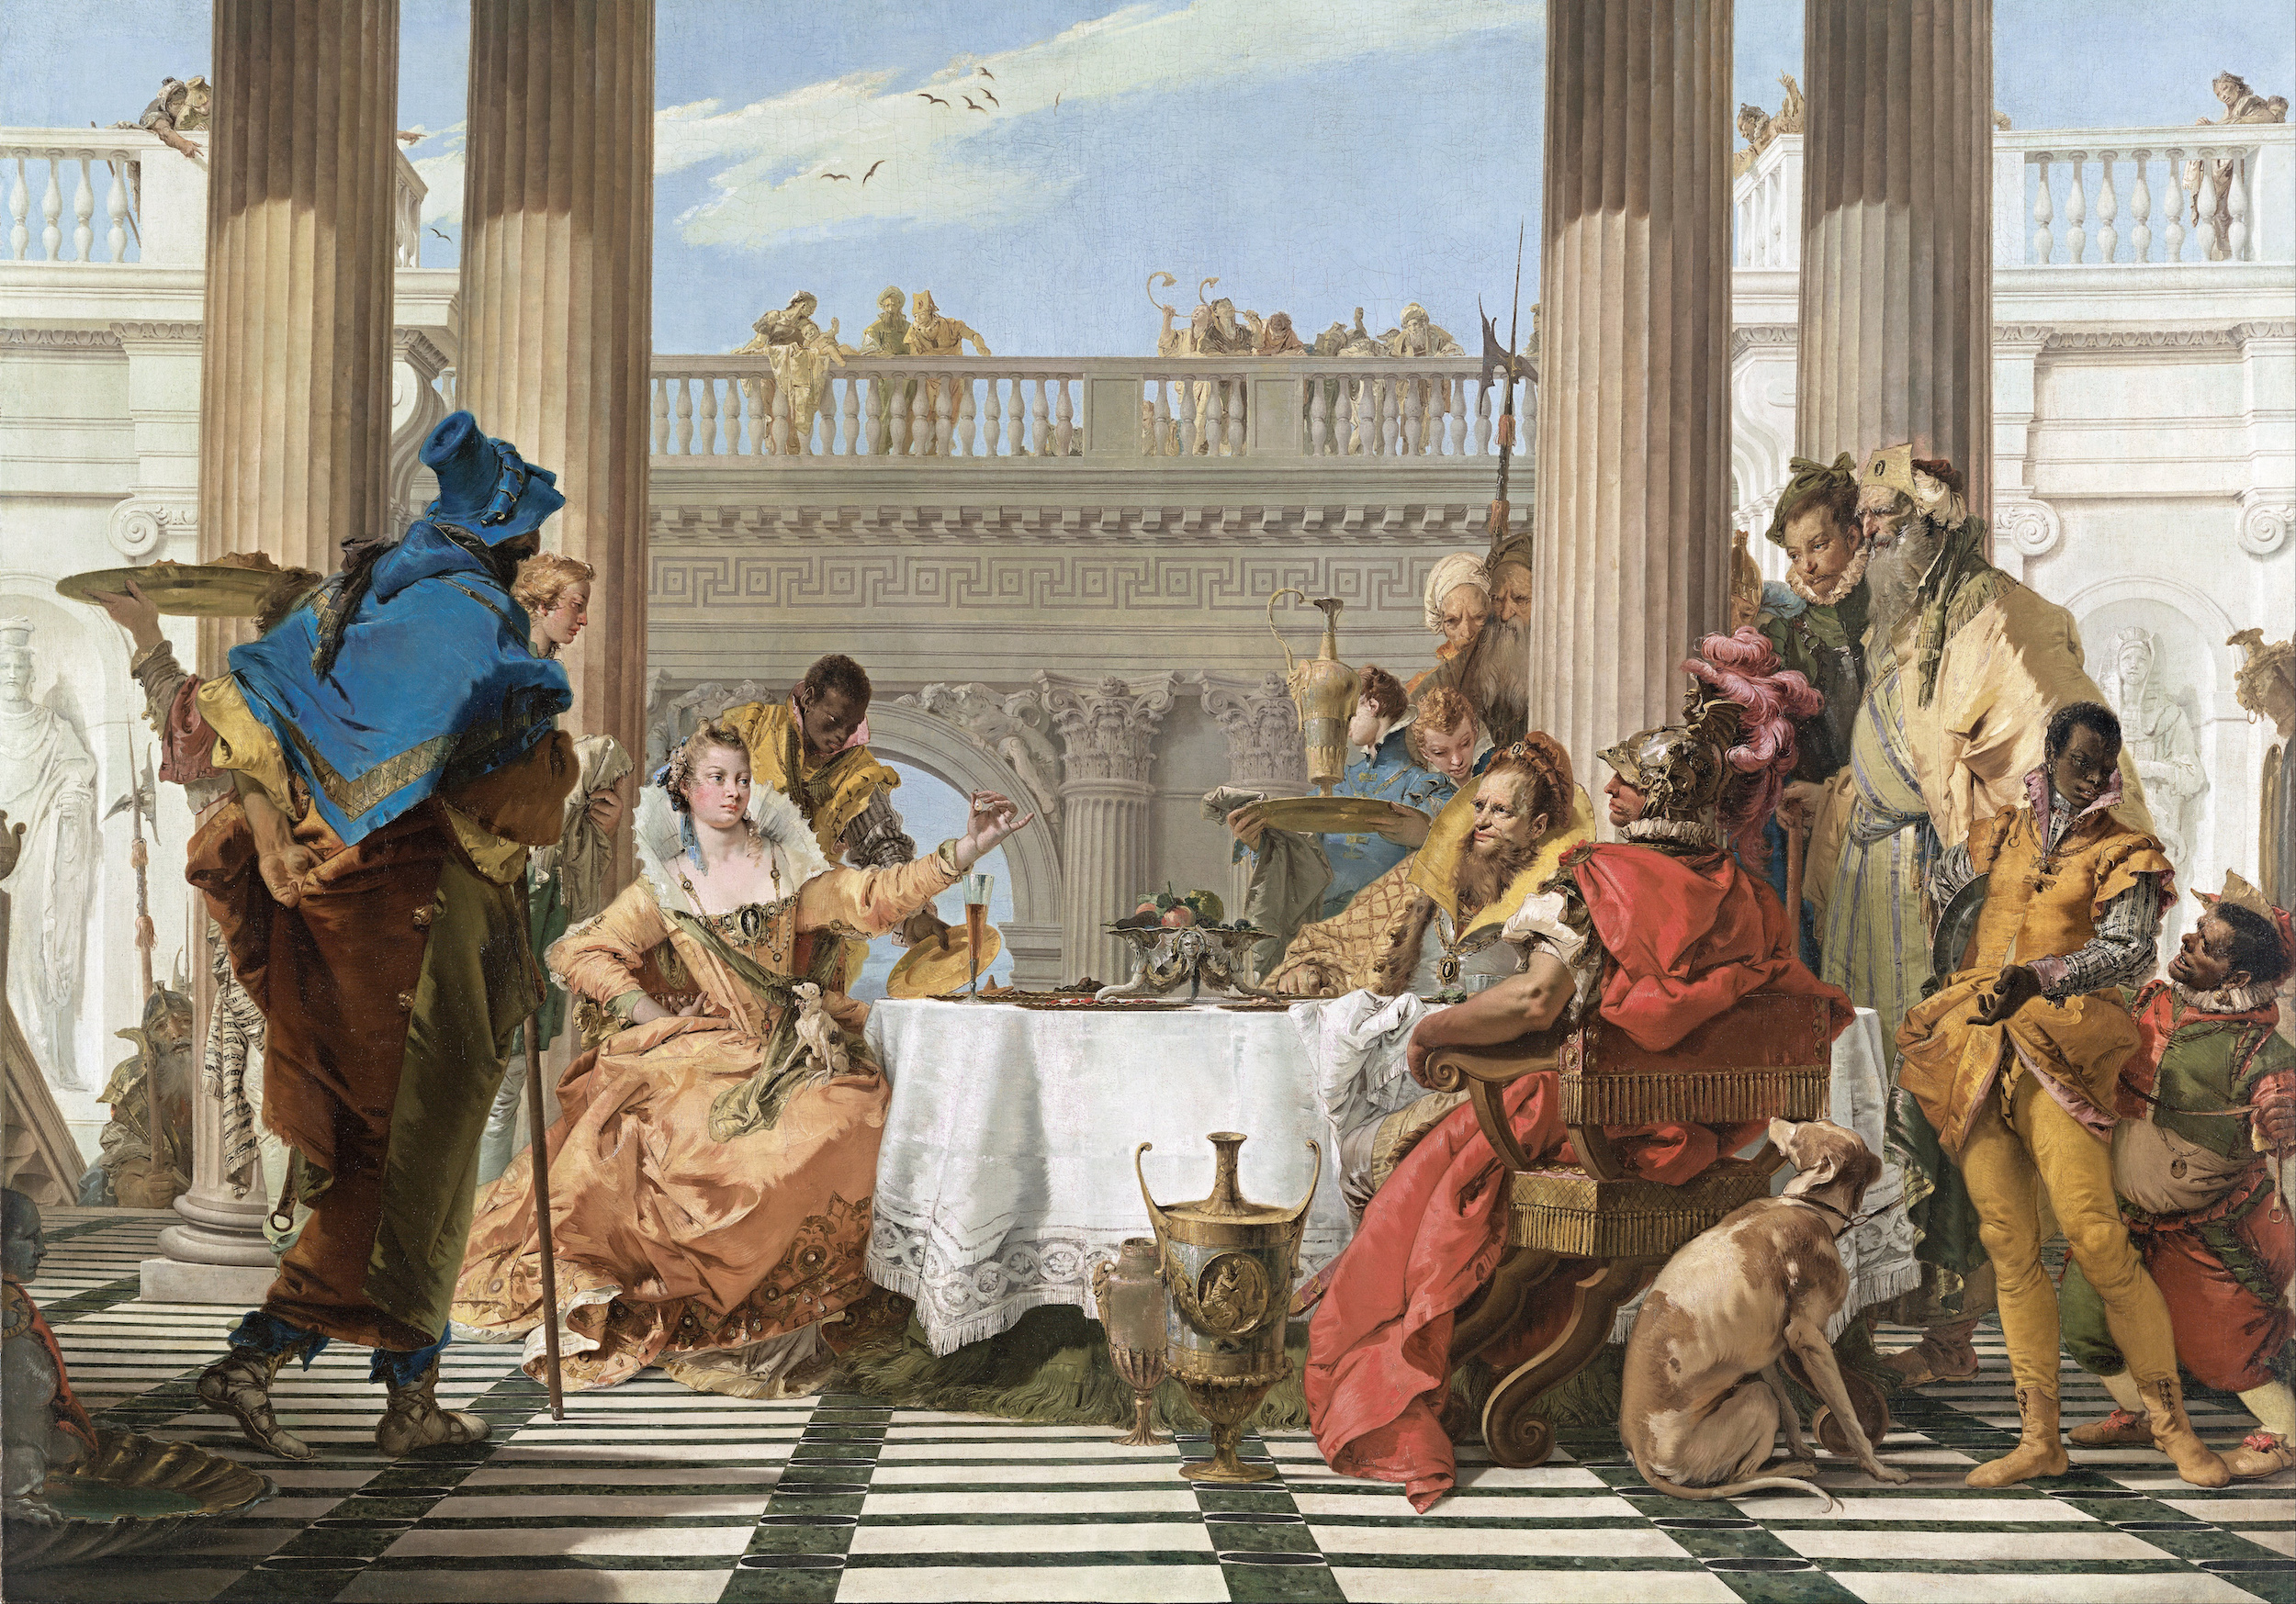 Le Banquet de Cléopâtre by Giovanni Battista Tiepolo - 1743-44 - 250.3 × 357 cm National Gallery of Victoria